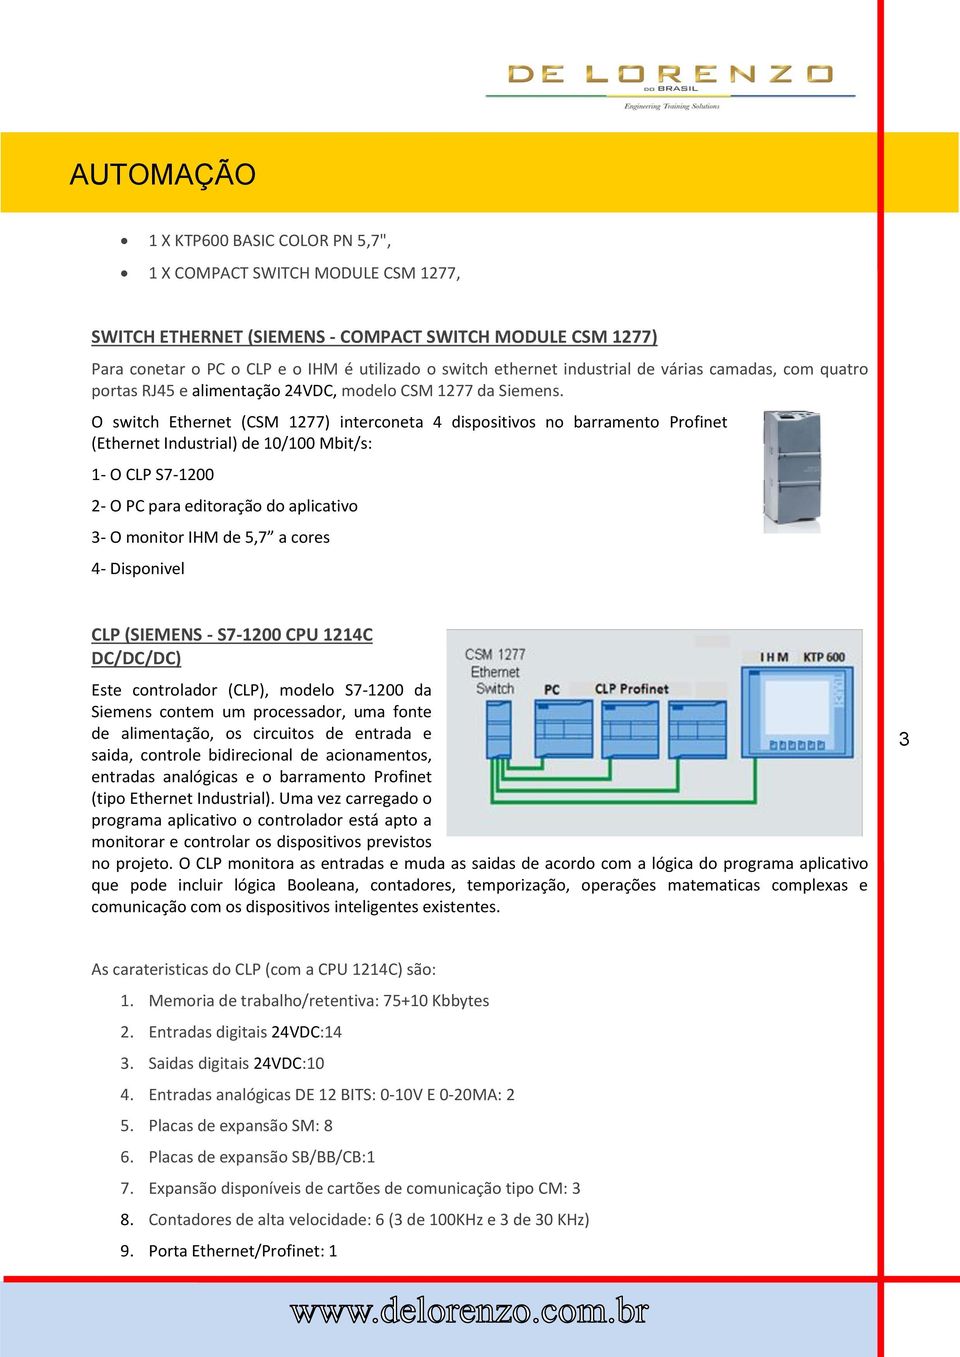 O switch Ethernet (CSM 1277) interconeta 4 dispositivos no barramento Profinet (Ethernet Industrial) de 10/100 Mbit/s: 1- O CLP S7-1200 2- O PC para editoração do aplicativo 3- O monitor IHM de 5,7 a